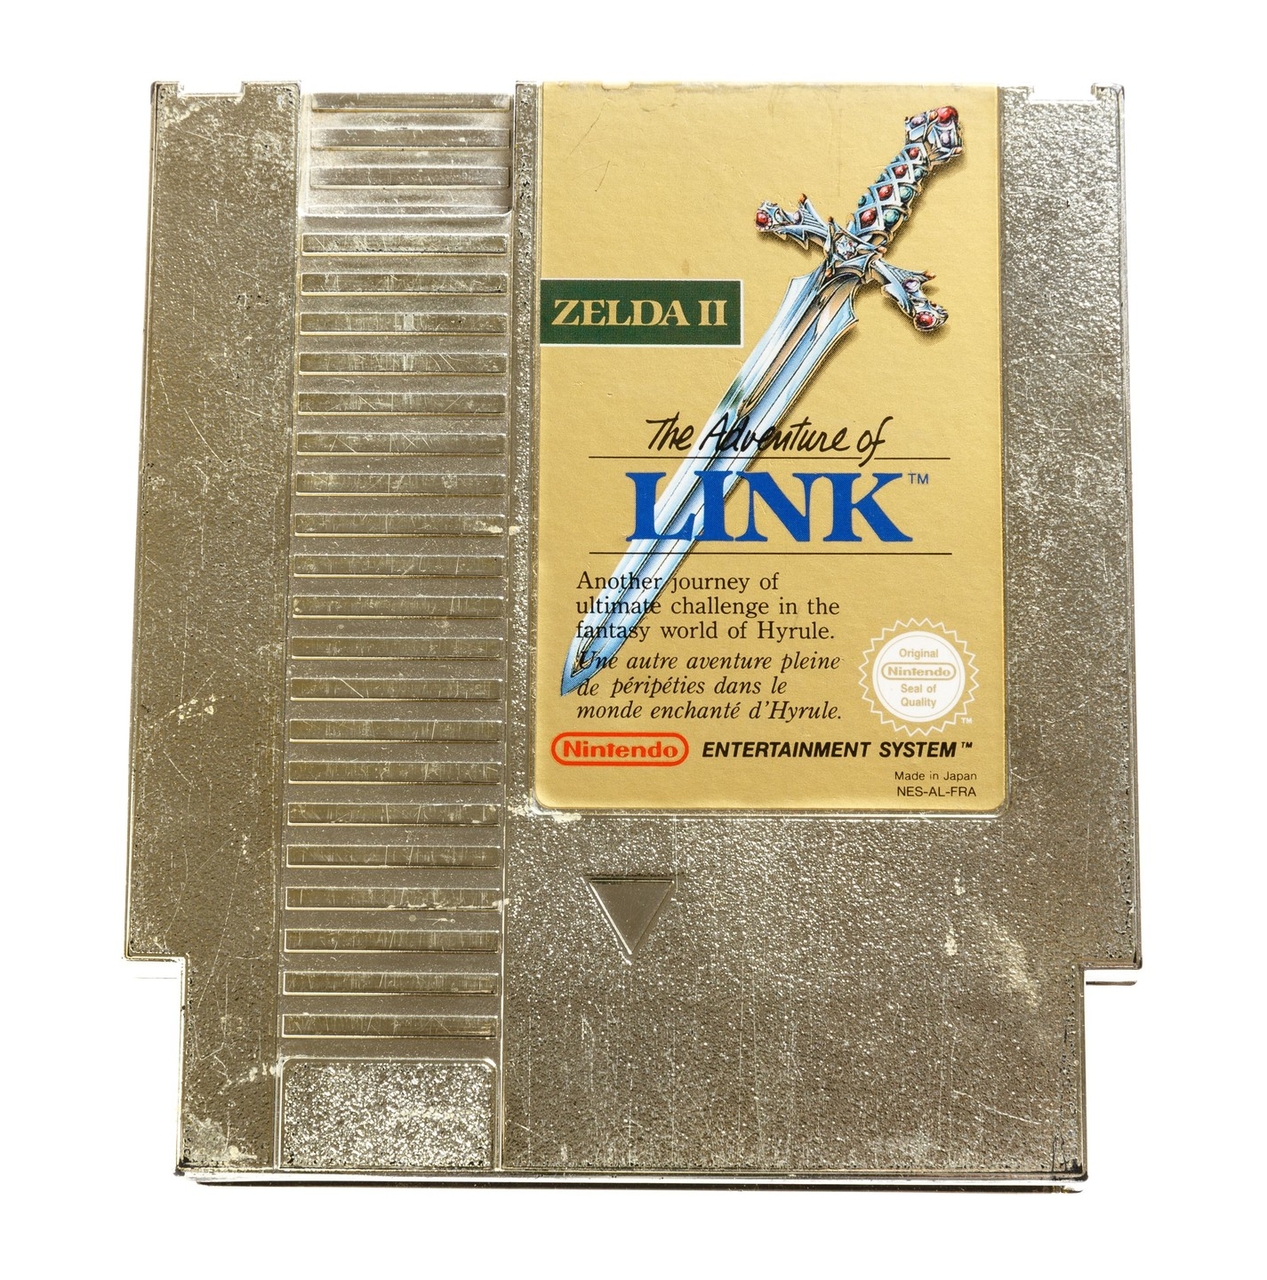 The Legend of Zelda II The Adventure of Link - Nintendo NES Games